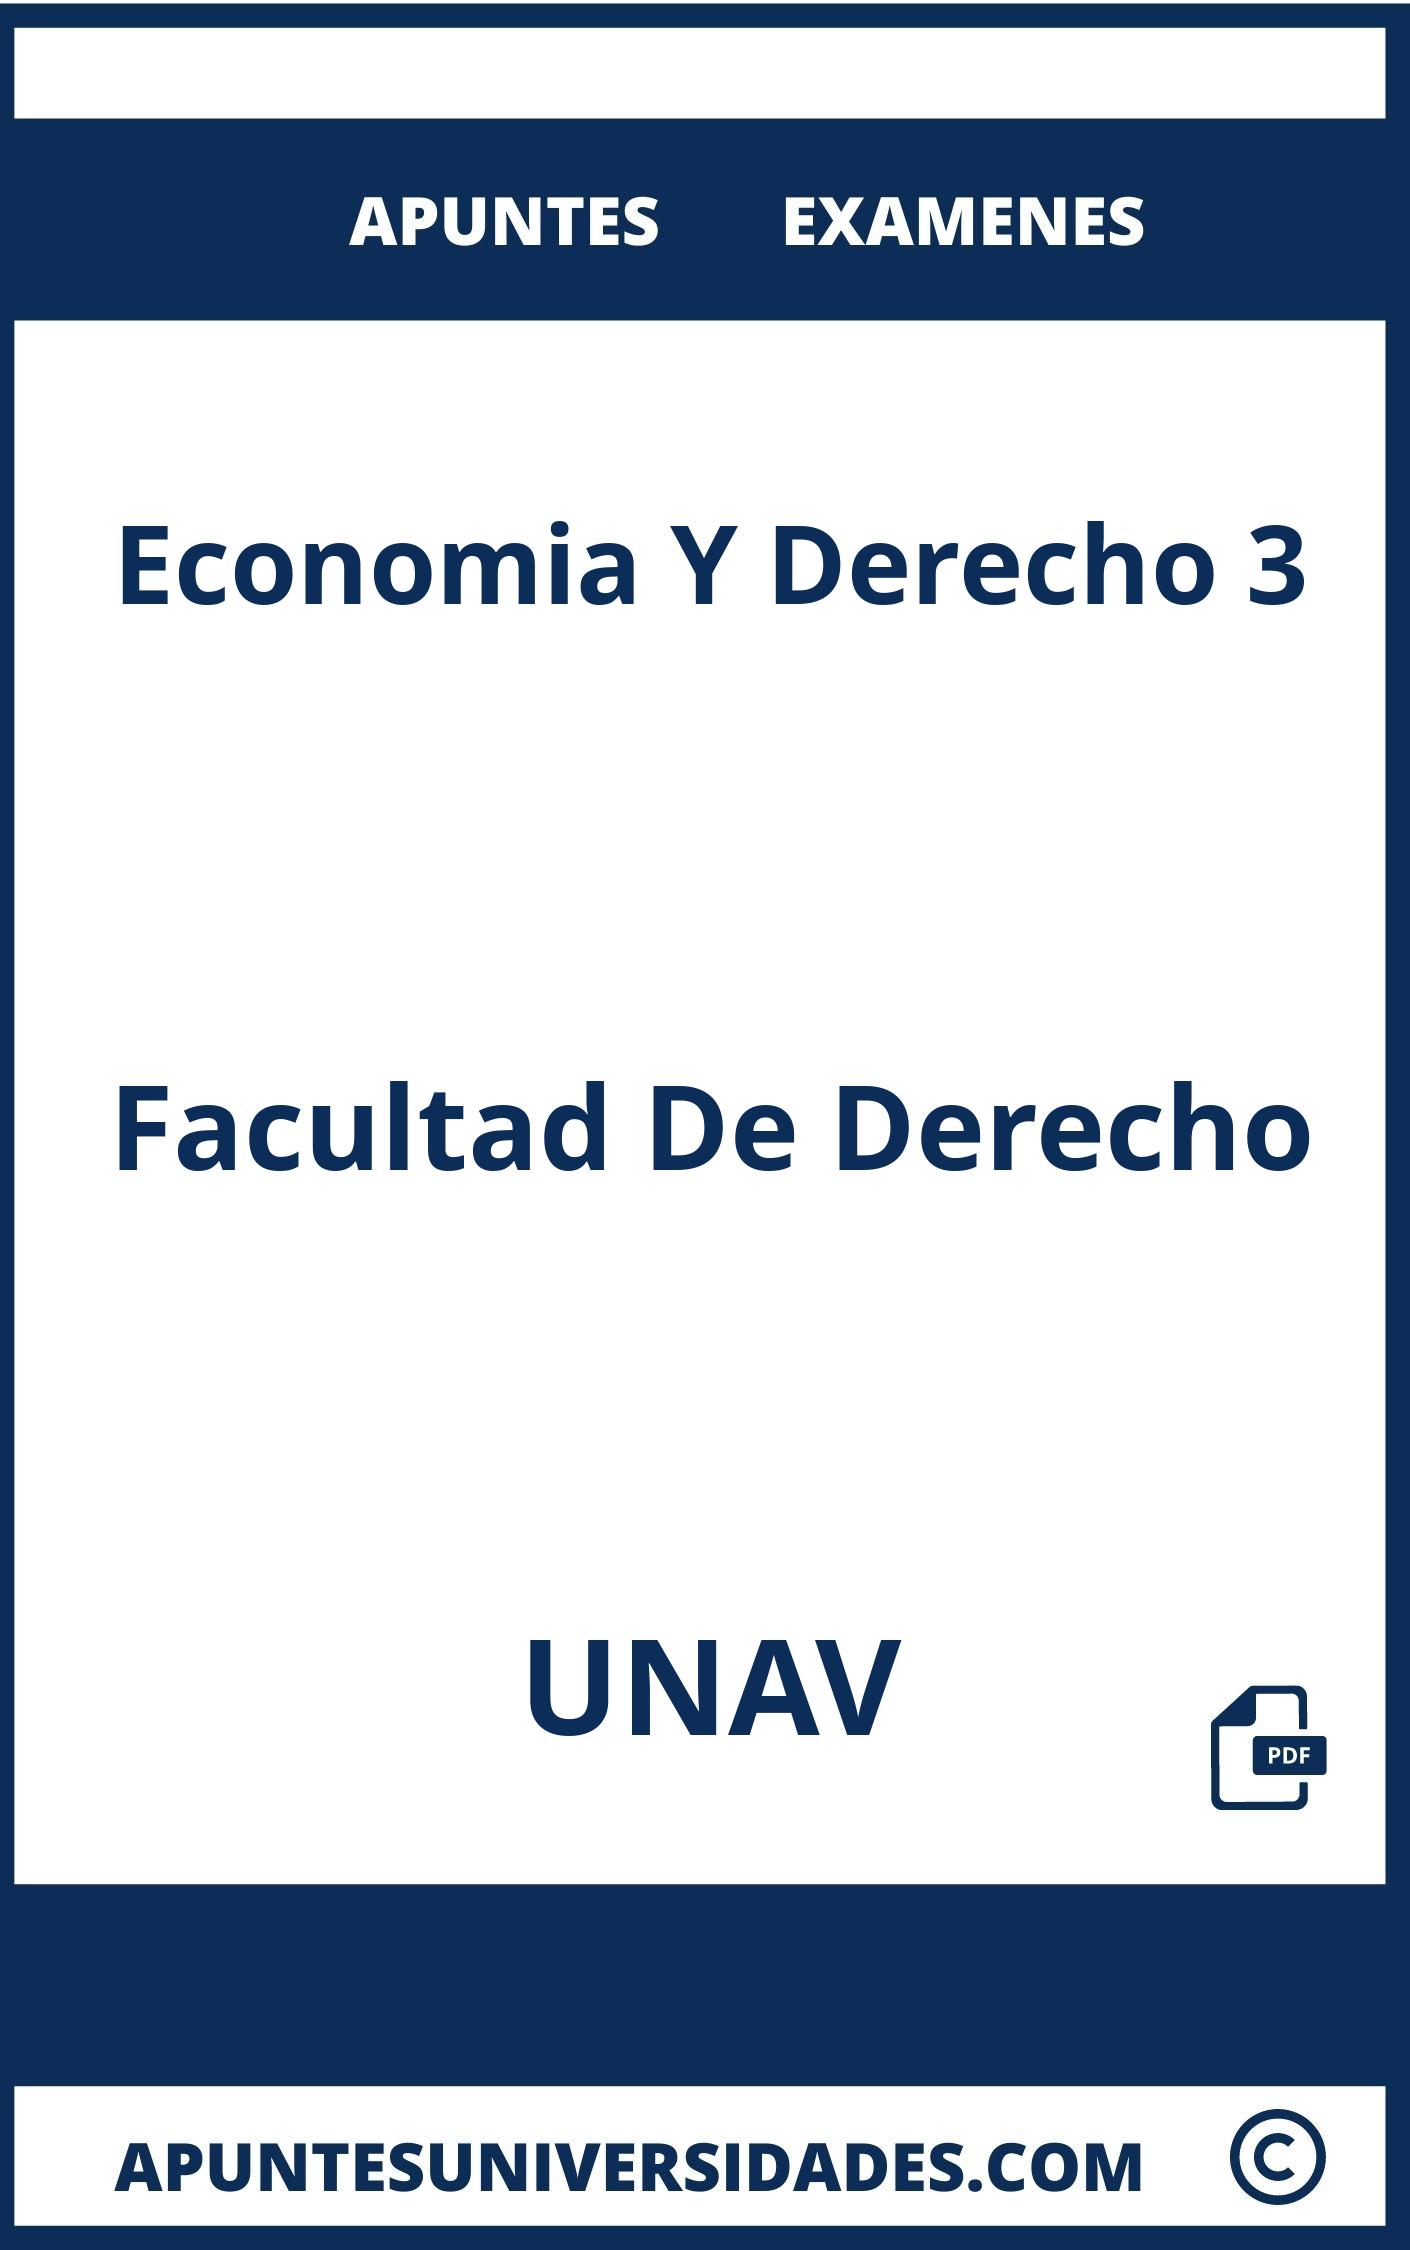 Apuntes y Examenes Economia Y Derecho 3 UNAV